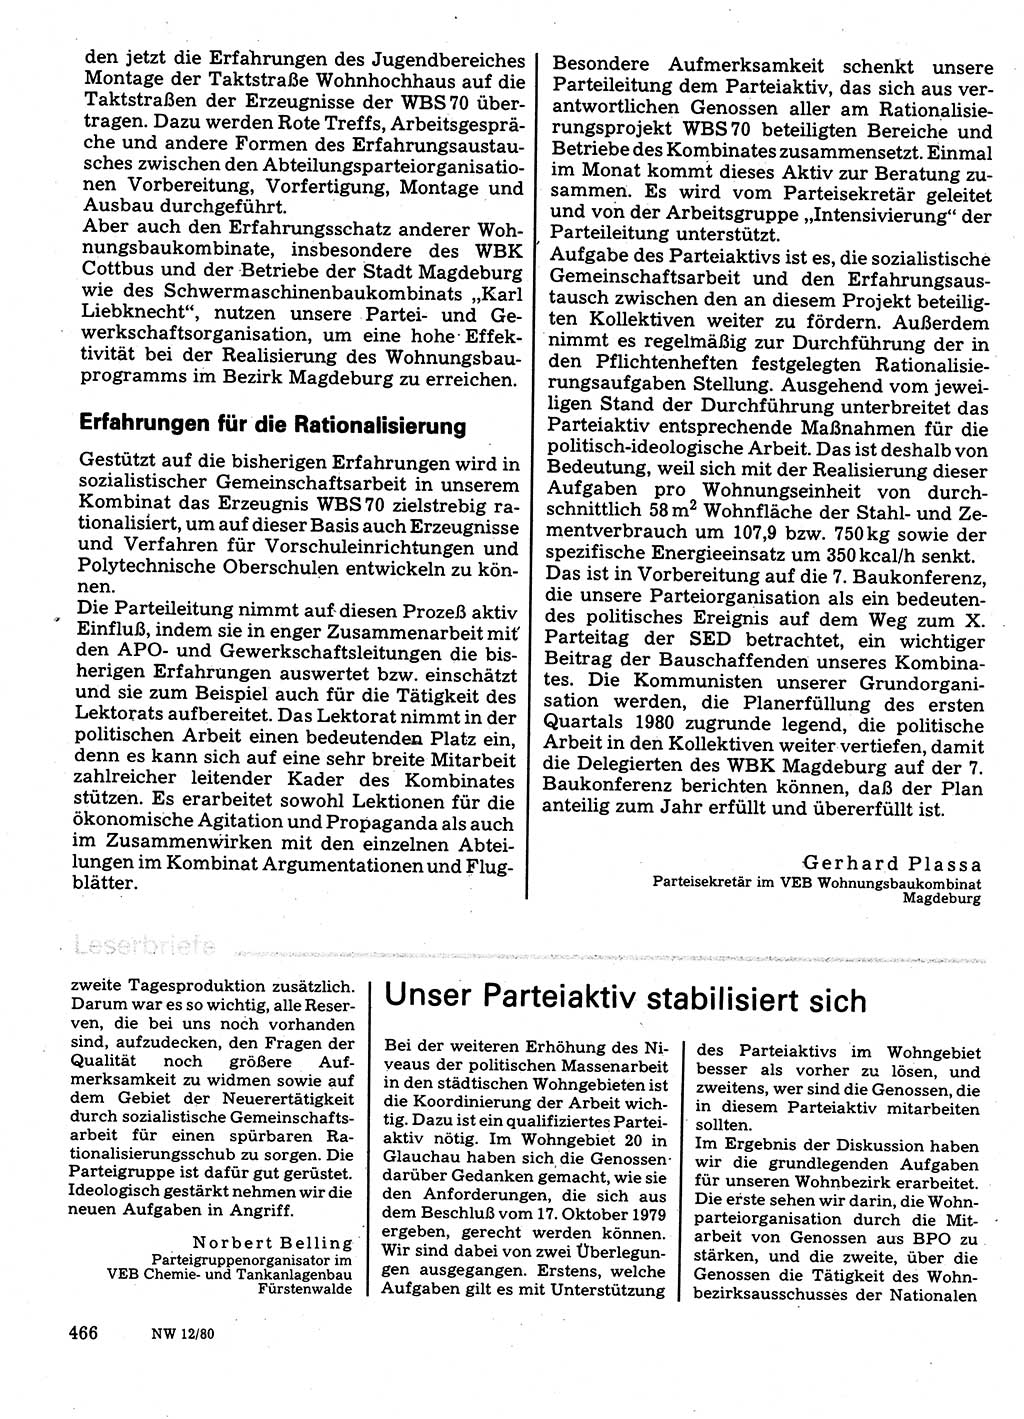 Neuer Weg (NW), Organ des Zentralkomitees (ZK) der SED (Sozialistische Einheitspartei Deutschlands) für Fragen des Parteilebens, 35. Jahrgang [Deutsche Demokratische Republik (DDR)] 1980, Seite 466 (NW ZK SED DDR 1980, S. 466)